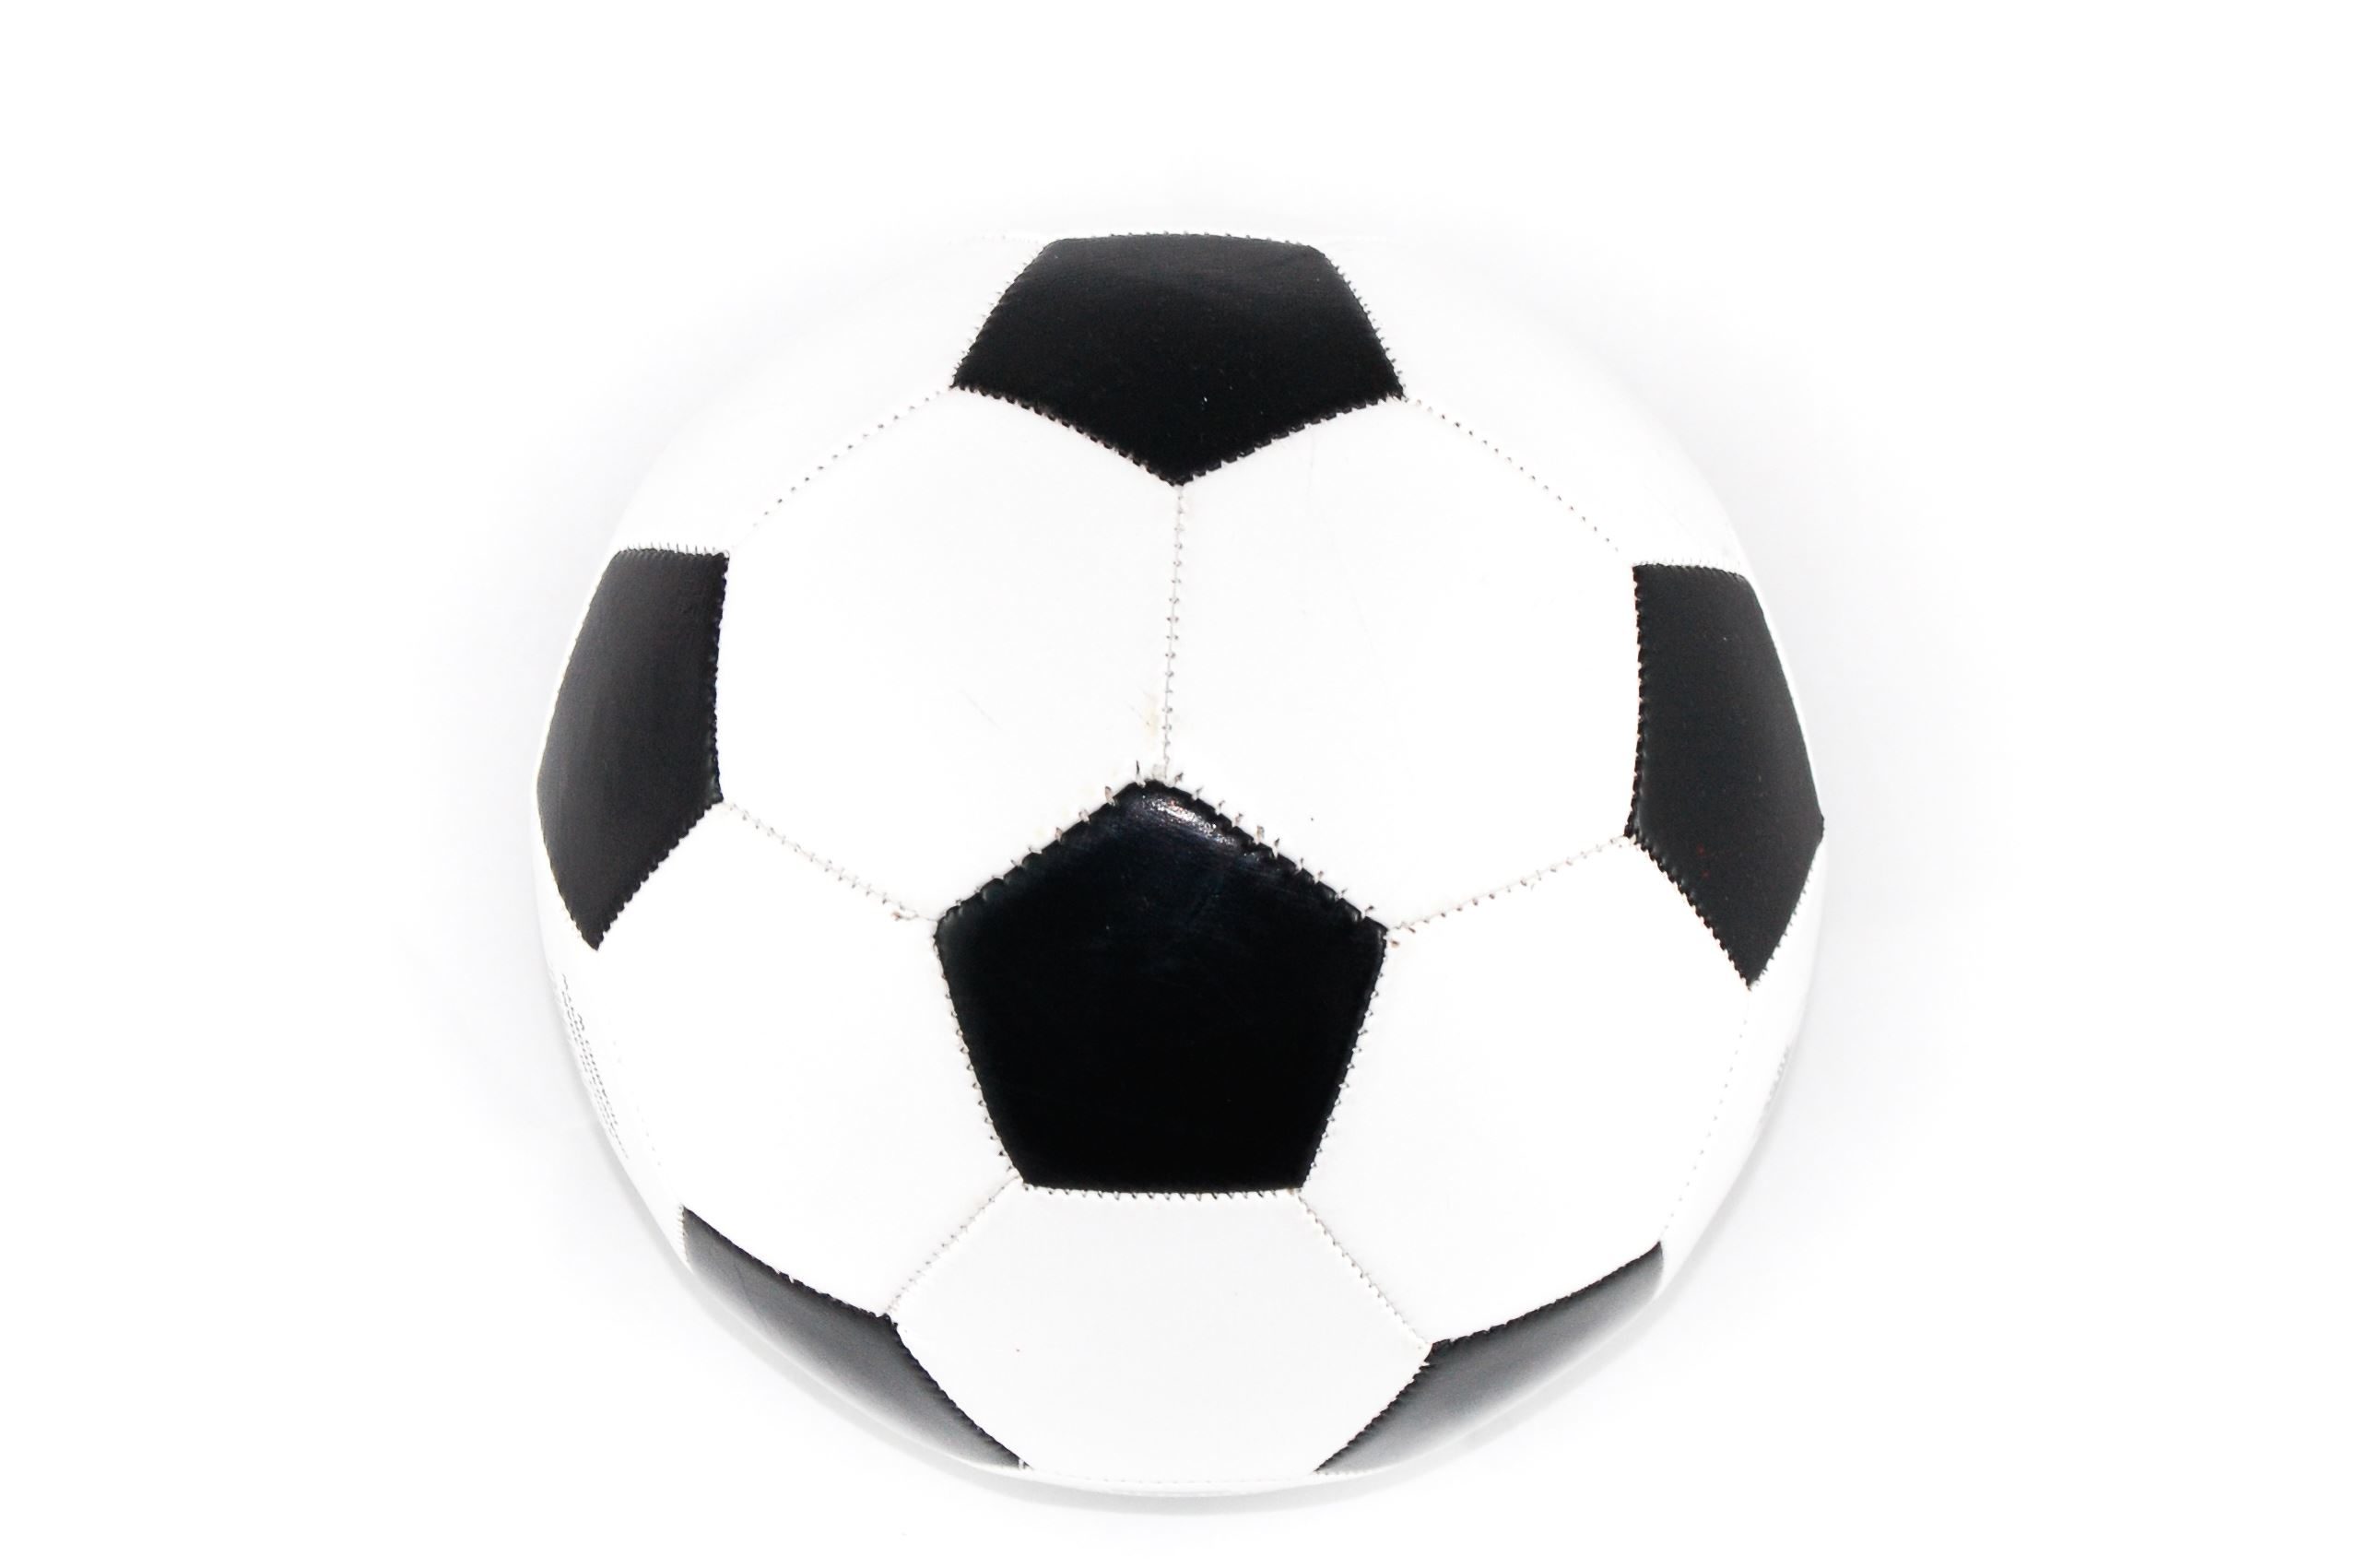 Kostenlose Bild: Ball, Fußball, Leder, Spiel, Sport, Ausrüstung